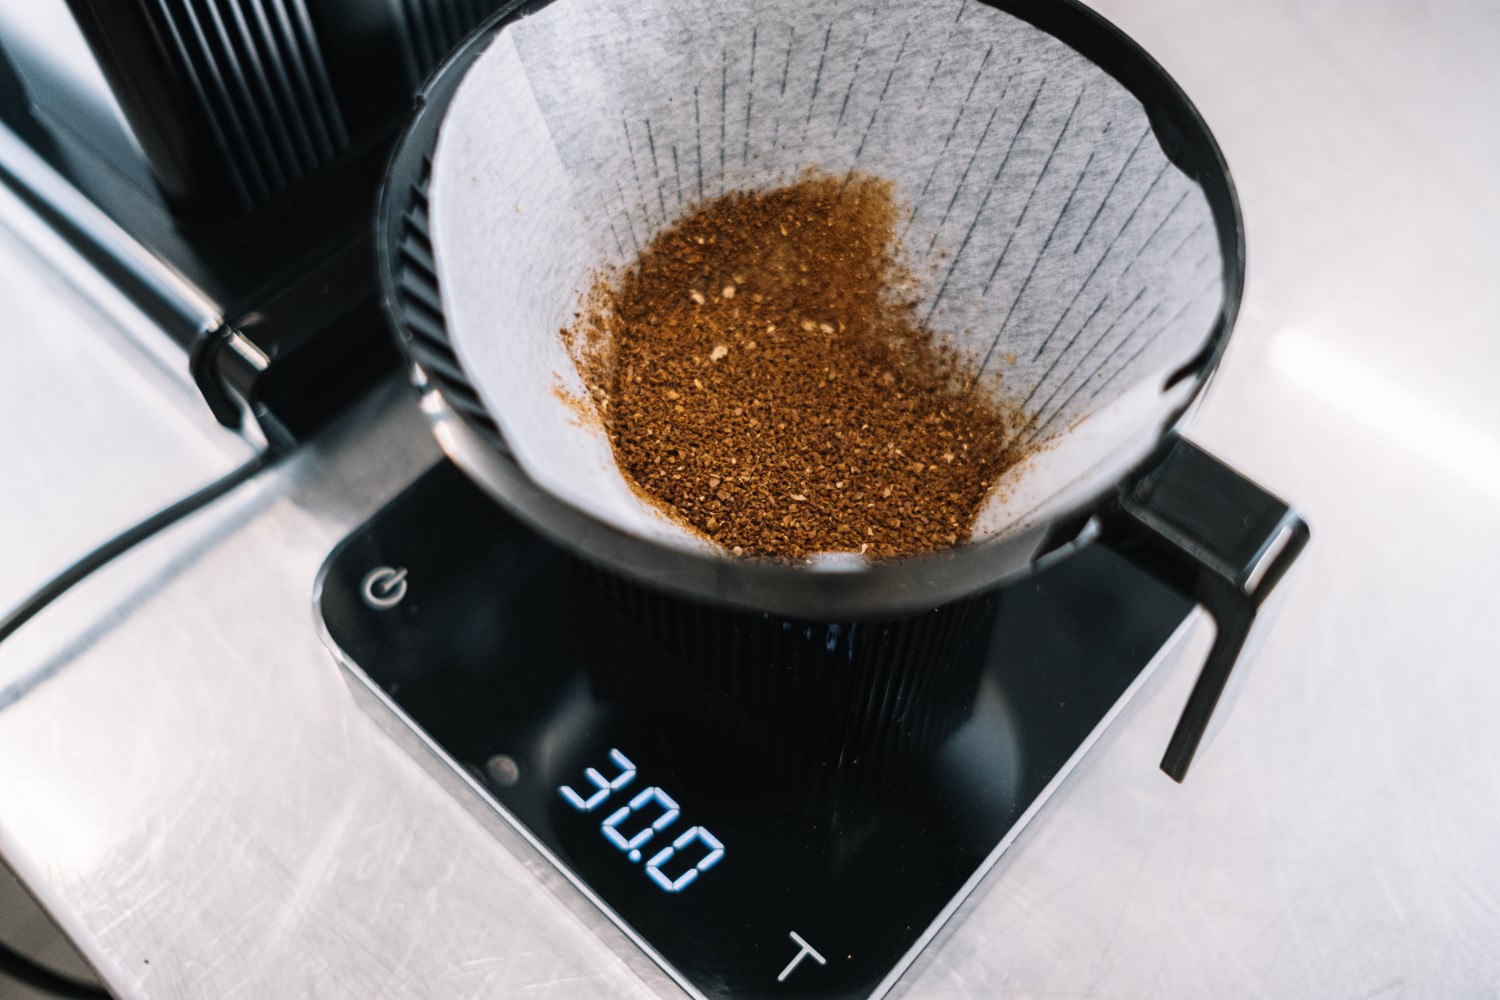 Приготовление кофе в капельной кофеварке